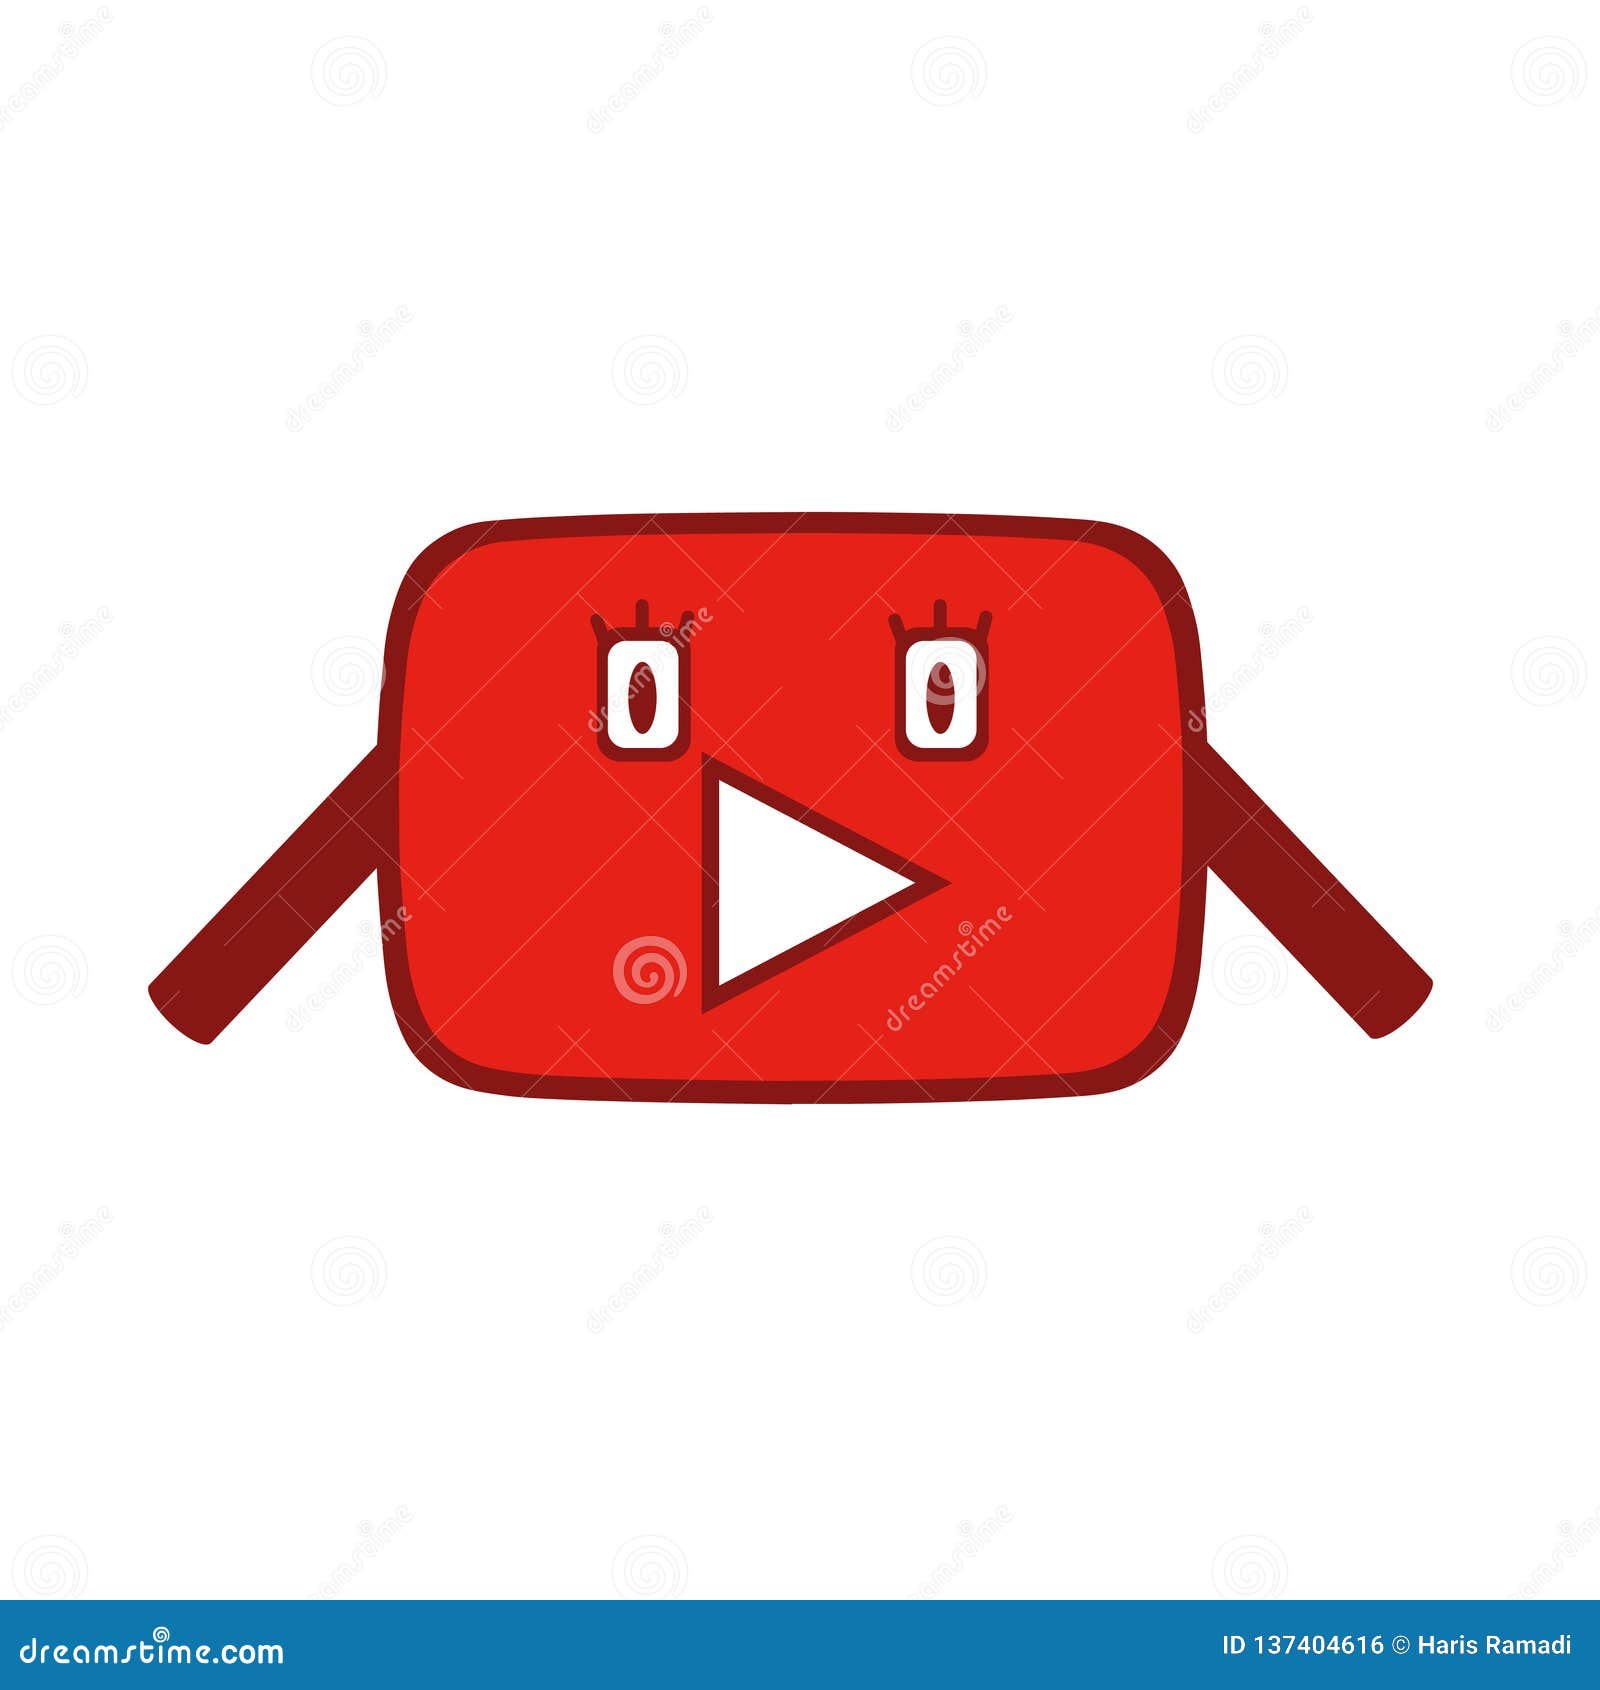 Funny Youtube Cartoon v2 stock vector. Illustration of icon - 137404616